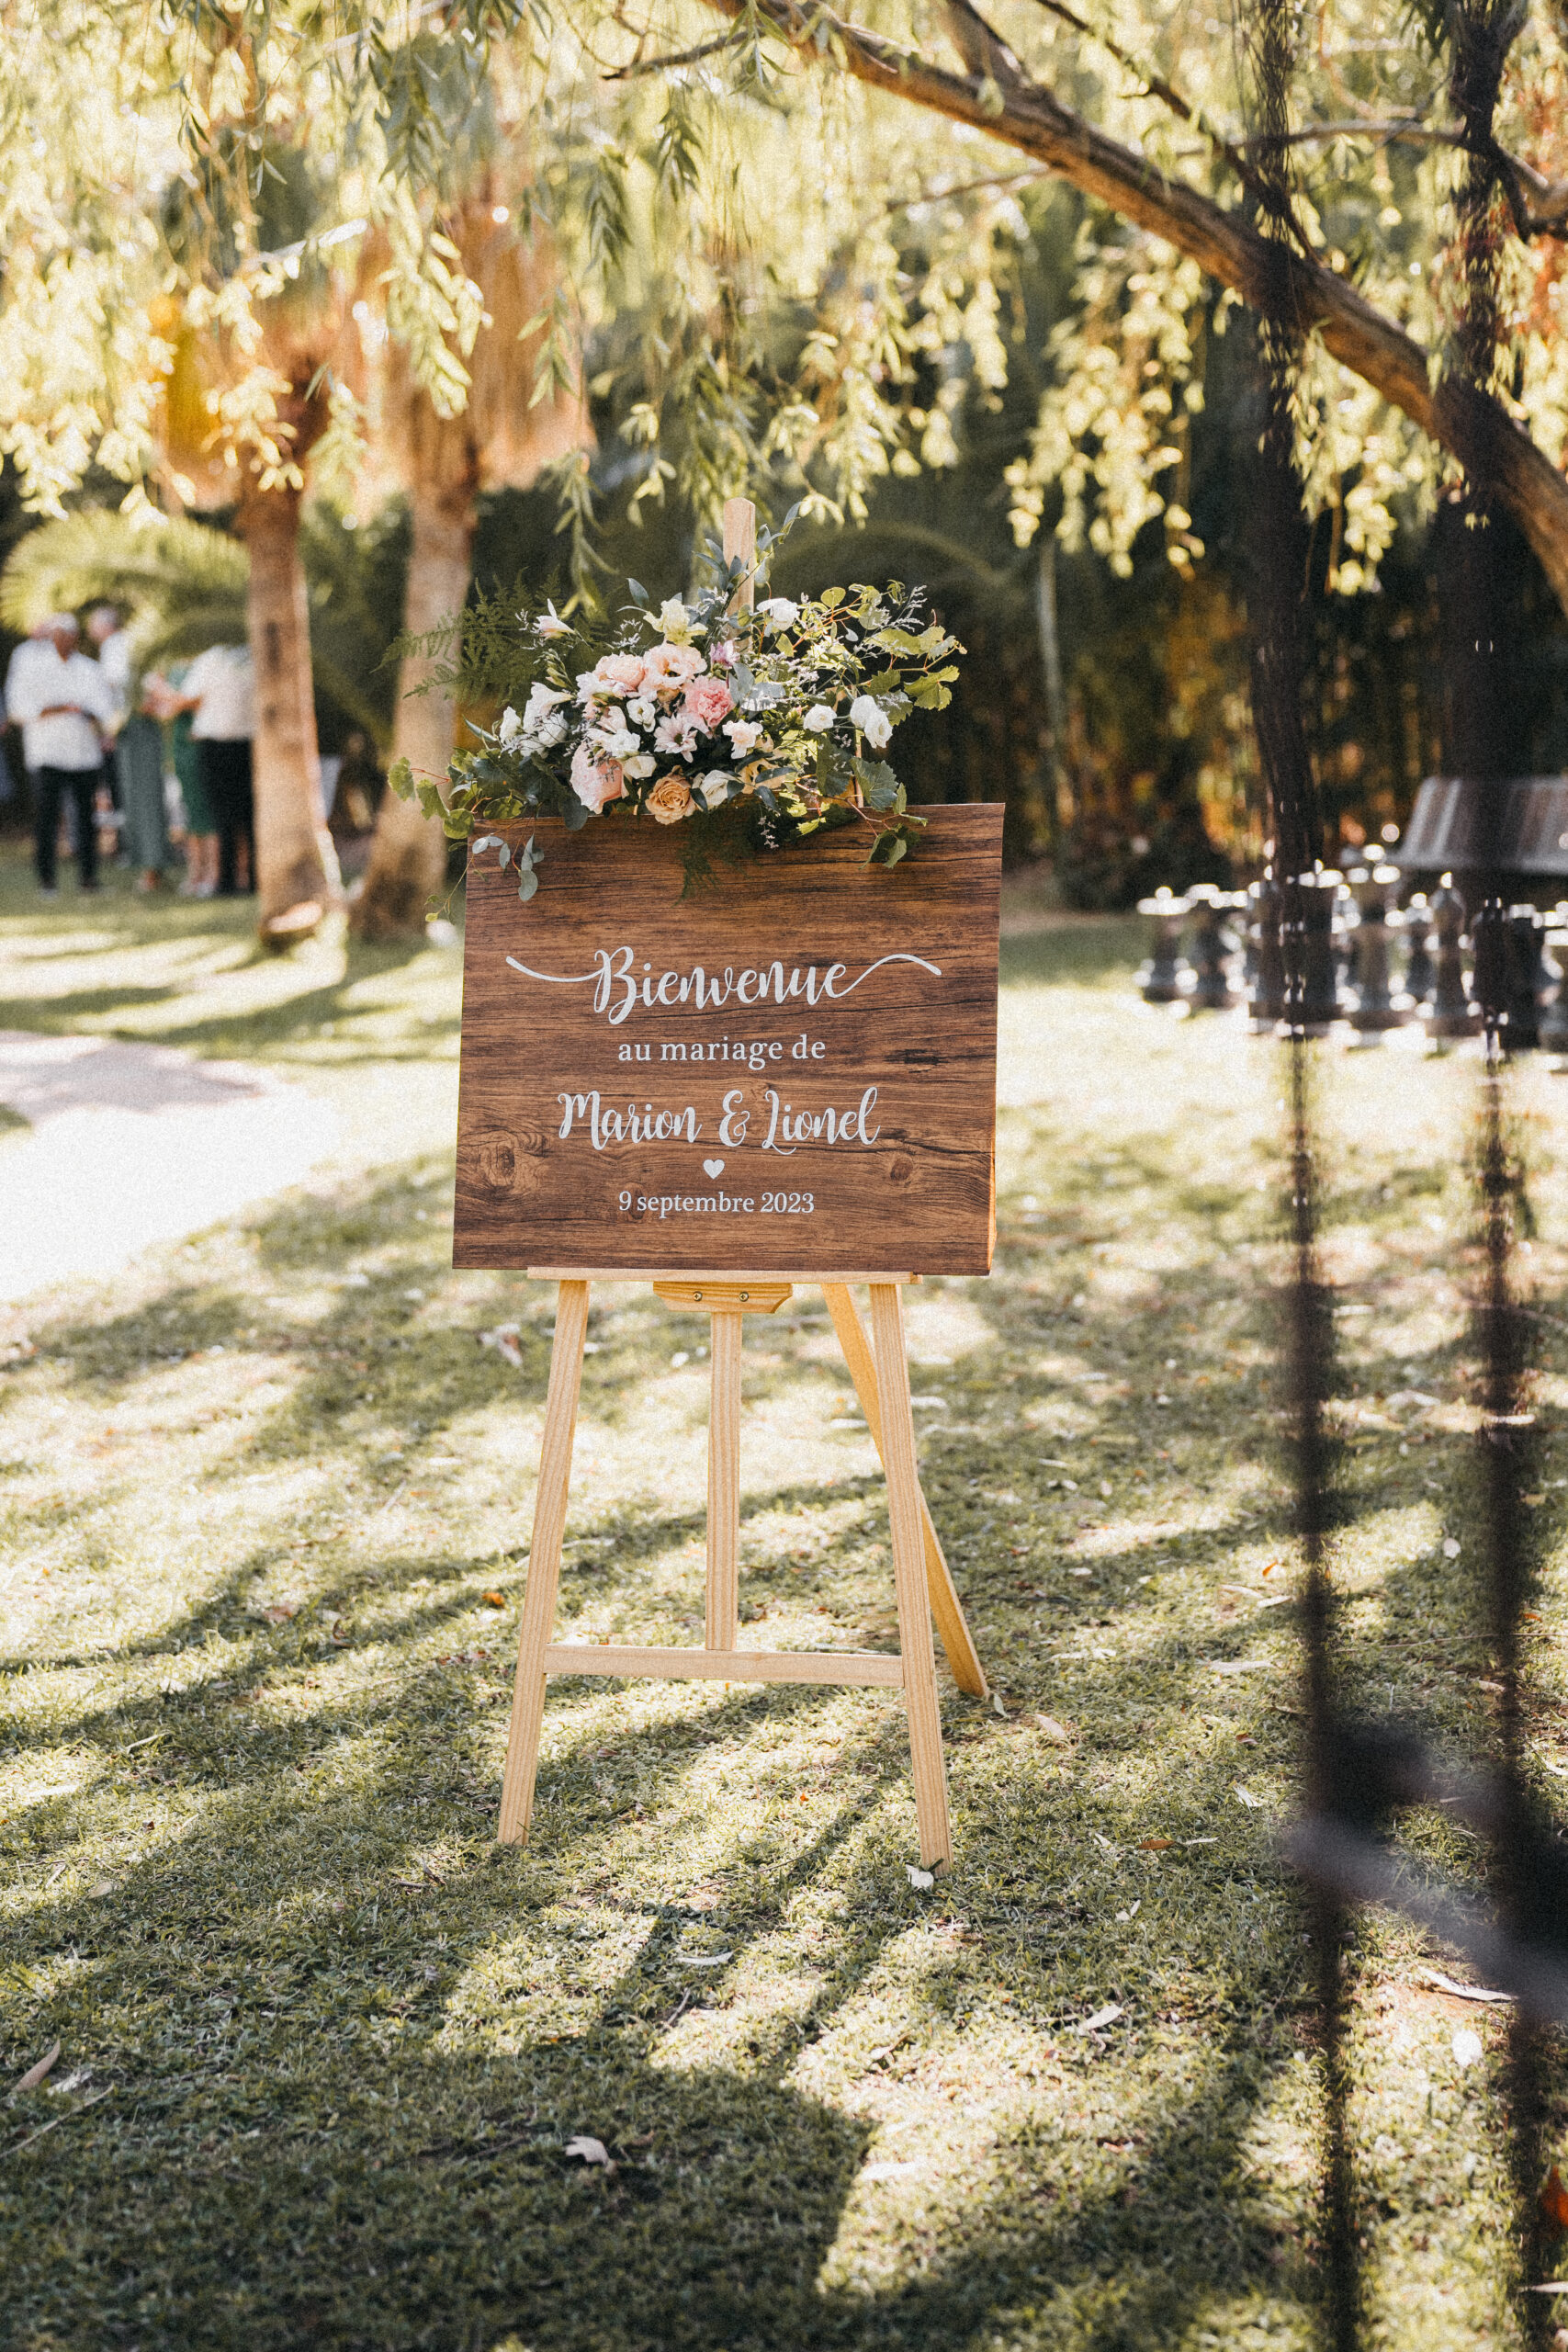 panneau de bienvenue, fleurs, panneau en bois, bienvenue au mariage, entrée de réception, chevalet. Les différents panneau d'accueil